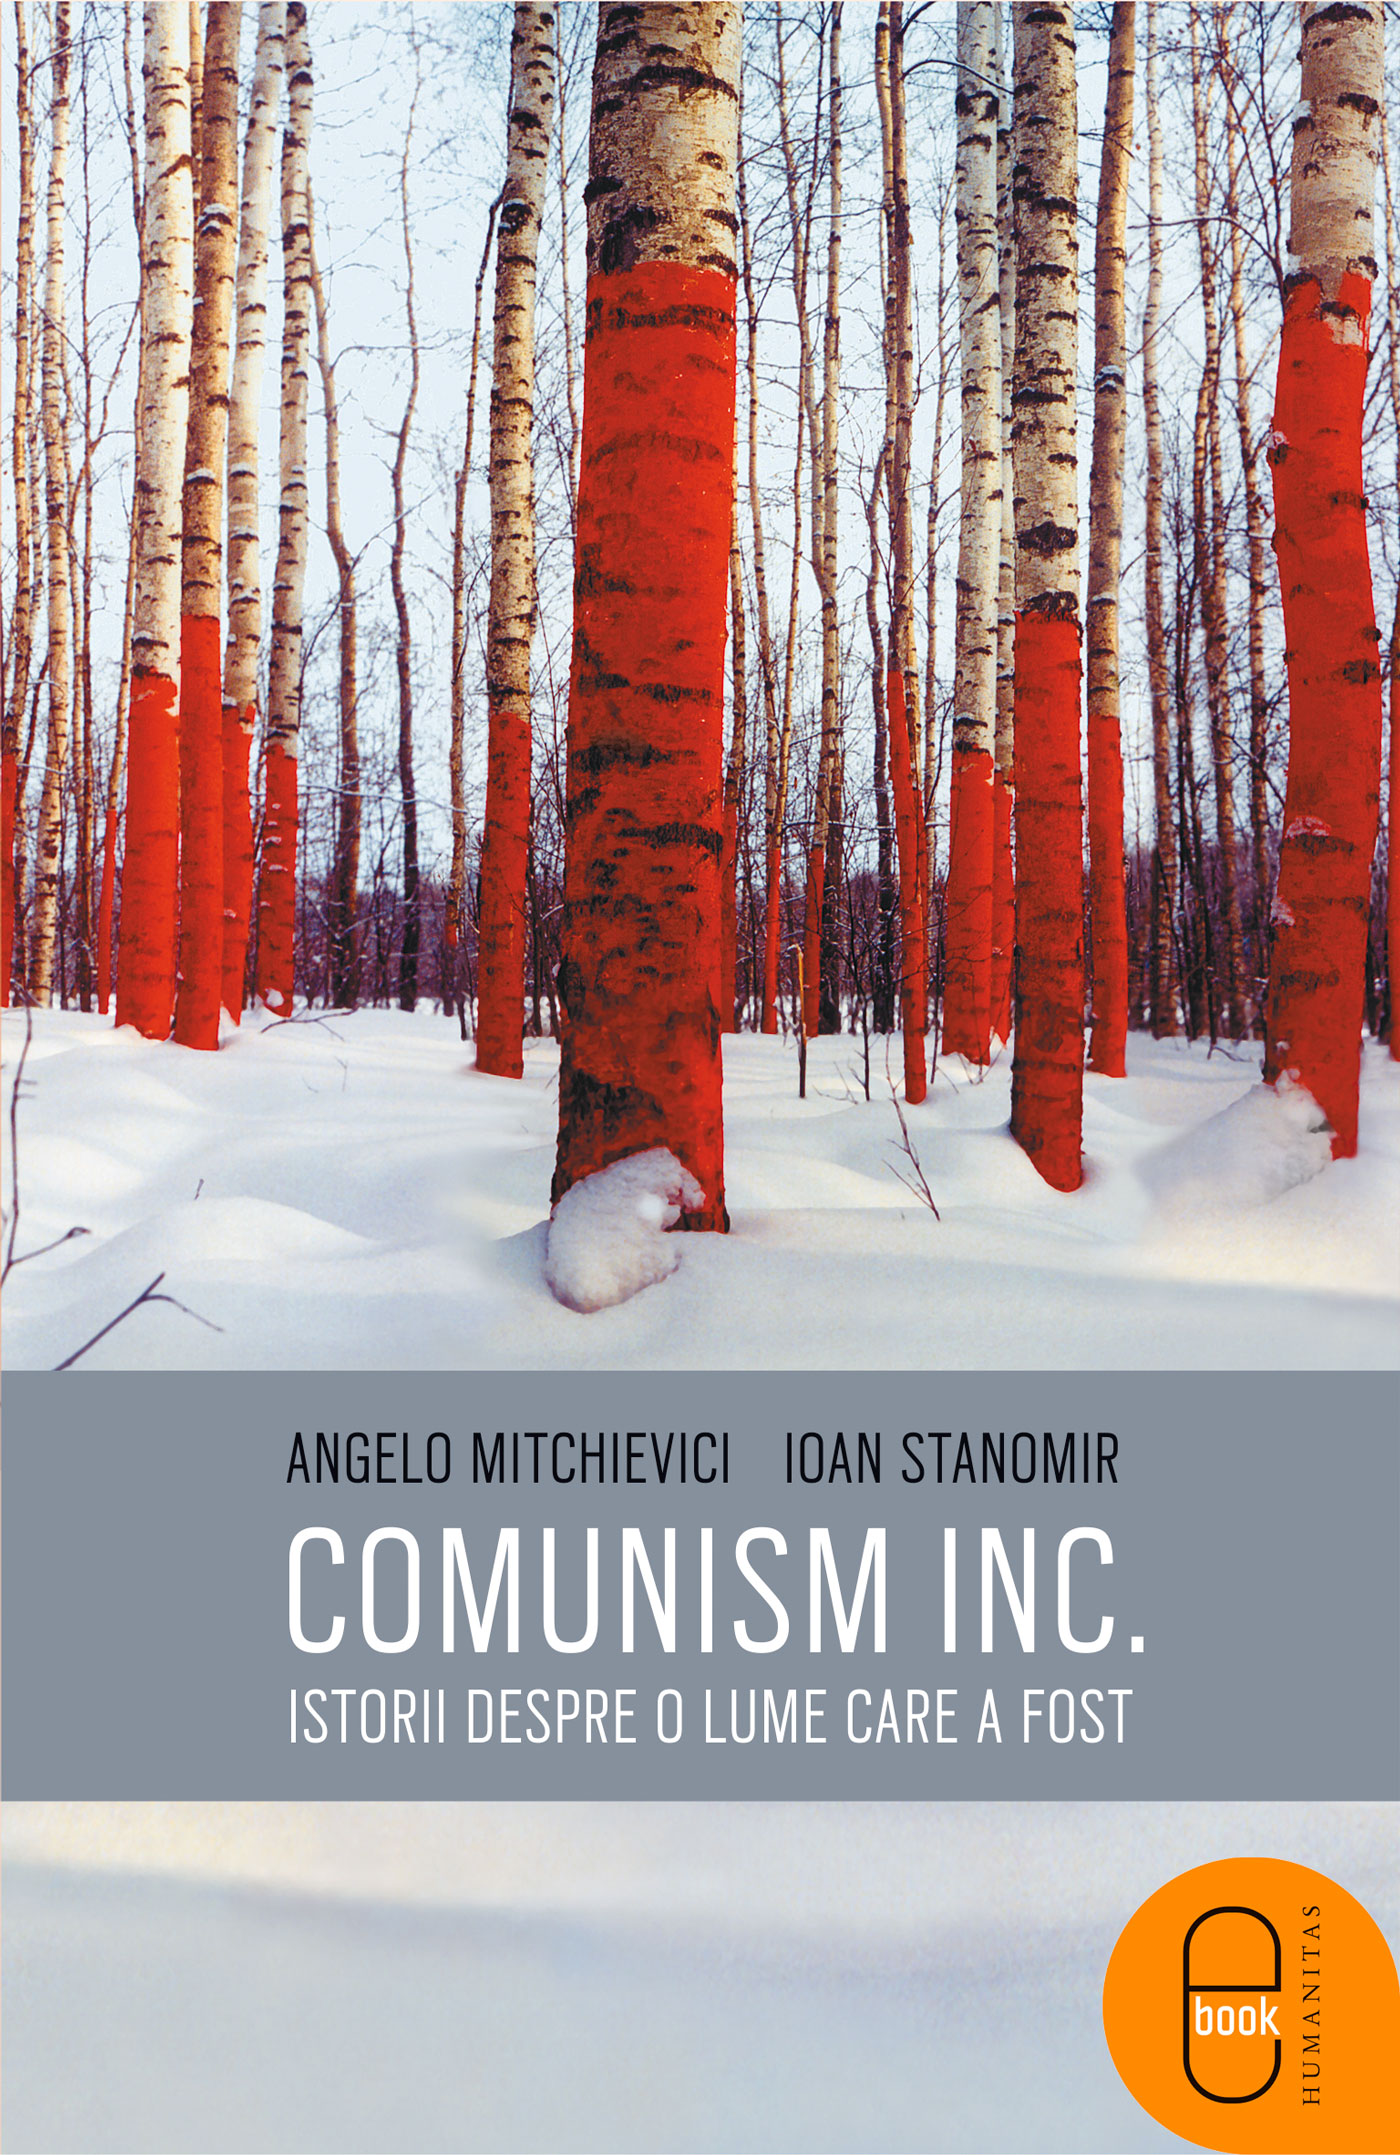 Comunism inc.: Istorii despre o lume care a fost (pdf)